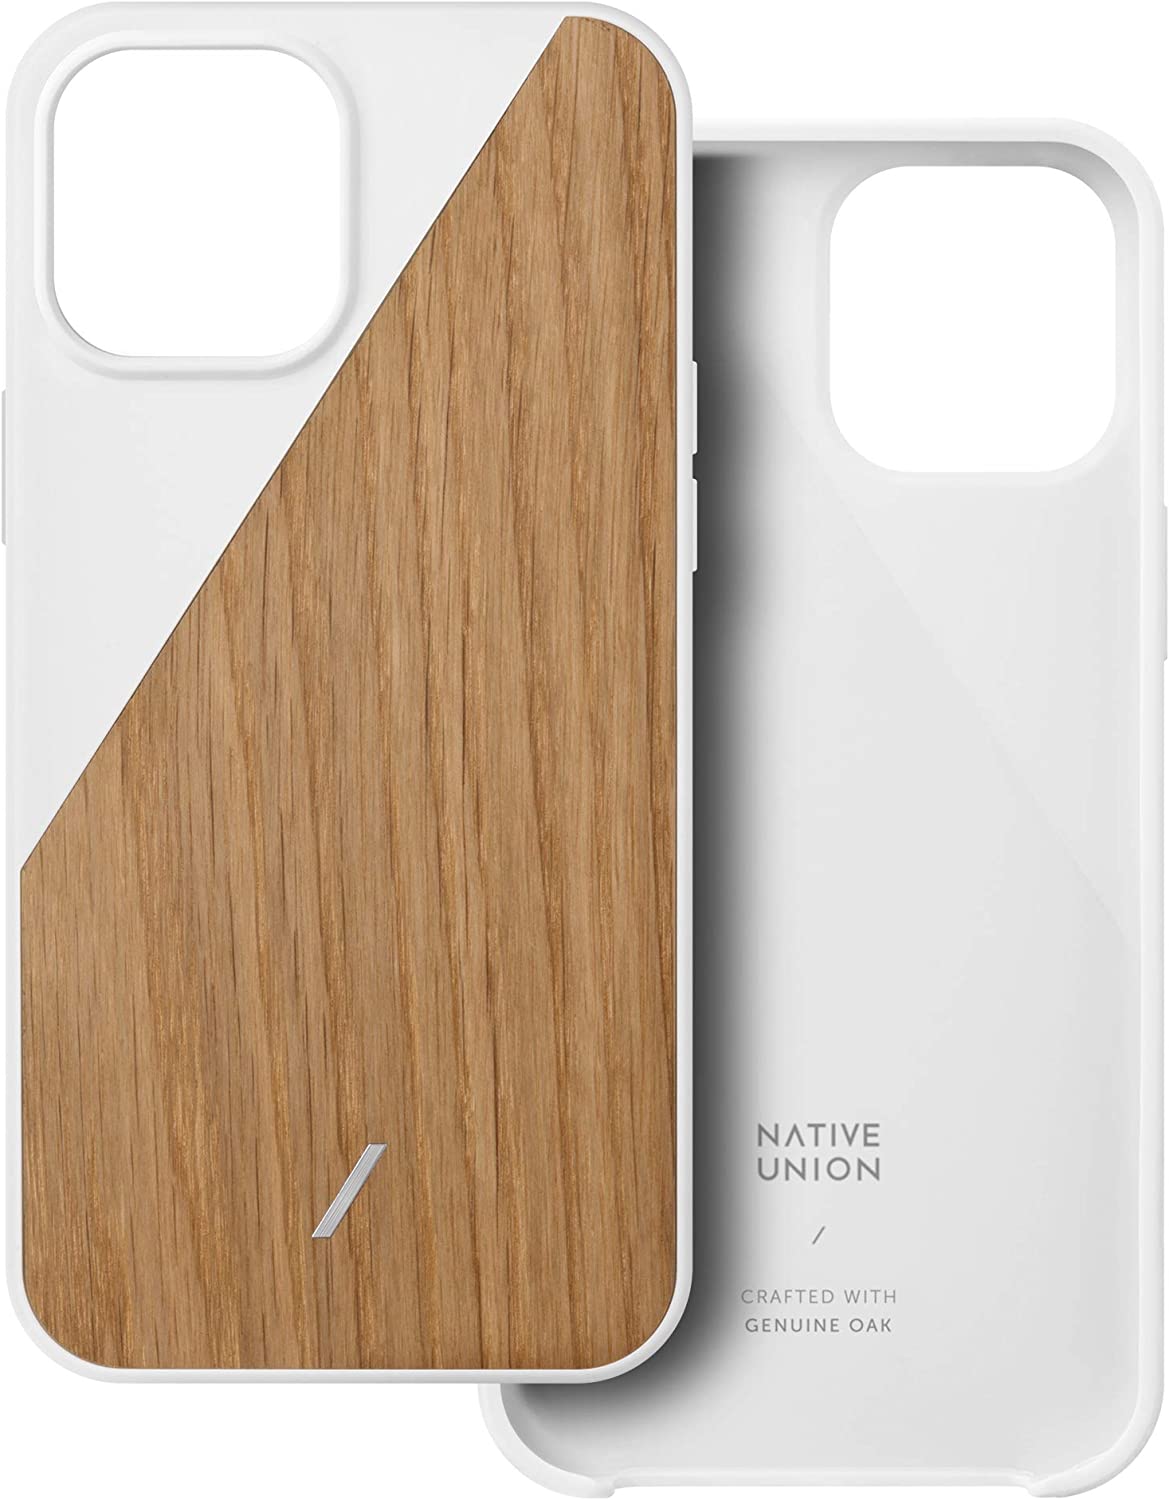 Native Union ネイティブユニオン iPhone 12/12Pro/12ProMax/12mini ケース Clic Wooden Case/ホワイト ウォールナット 木目 スマホケース カバー 日本未発売 正規品